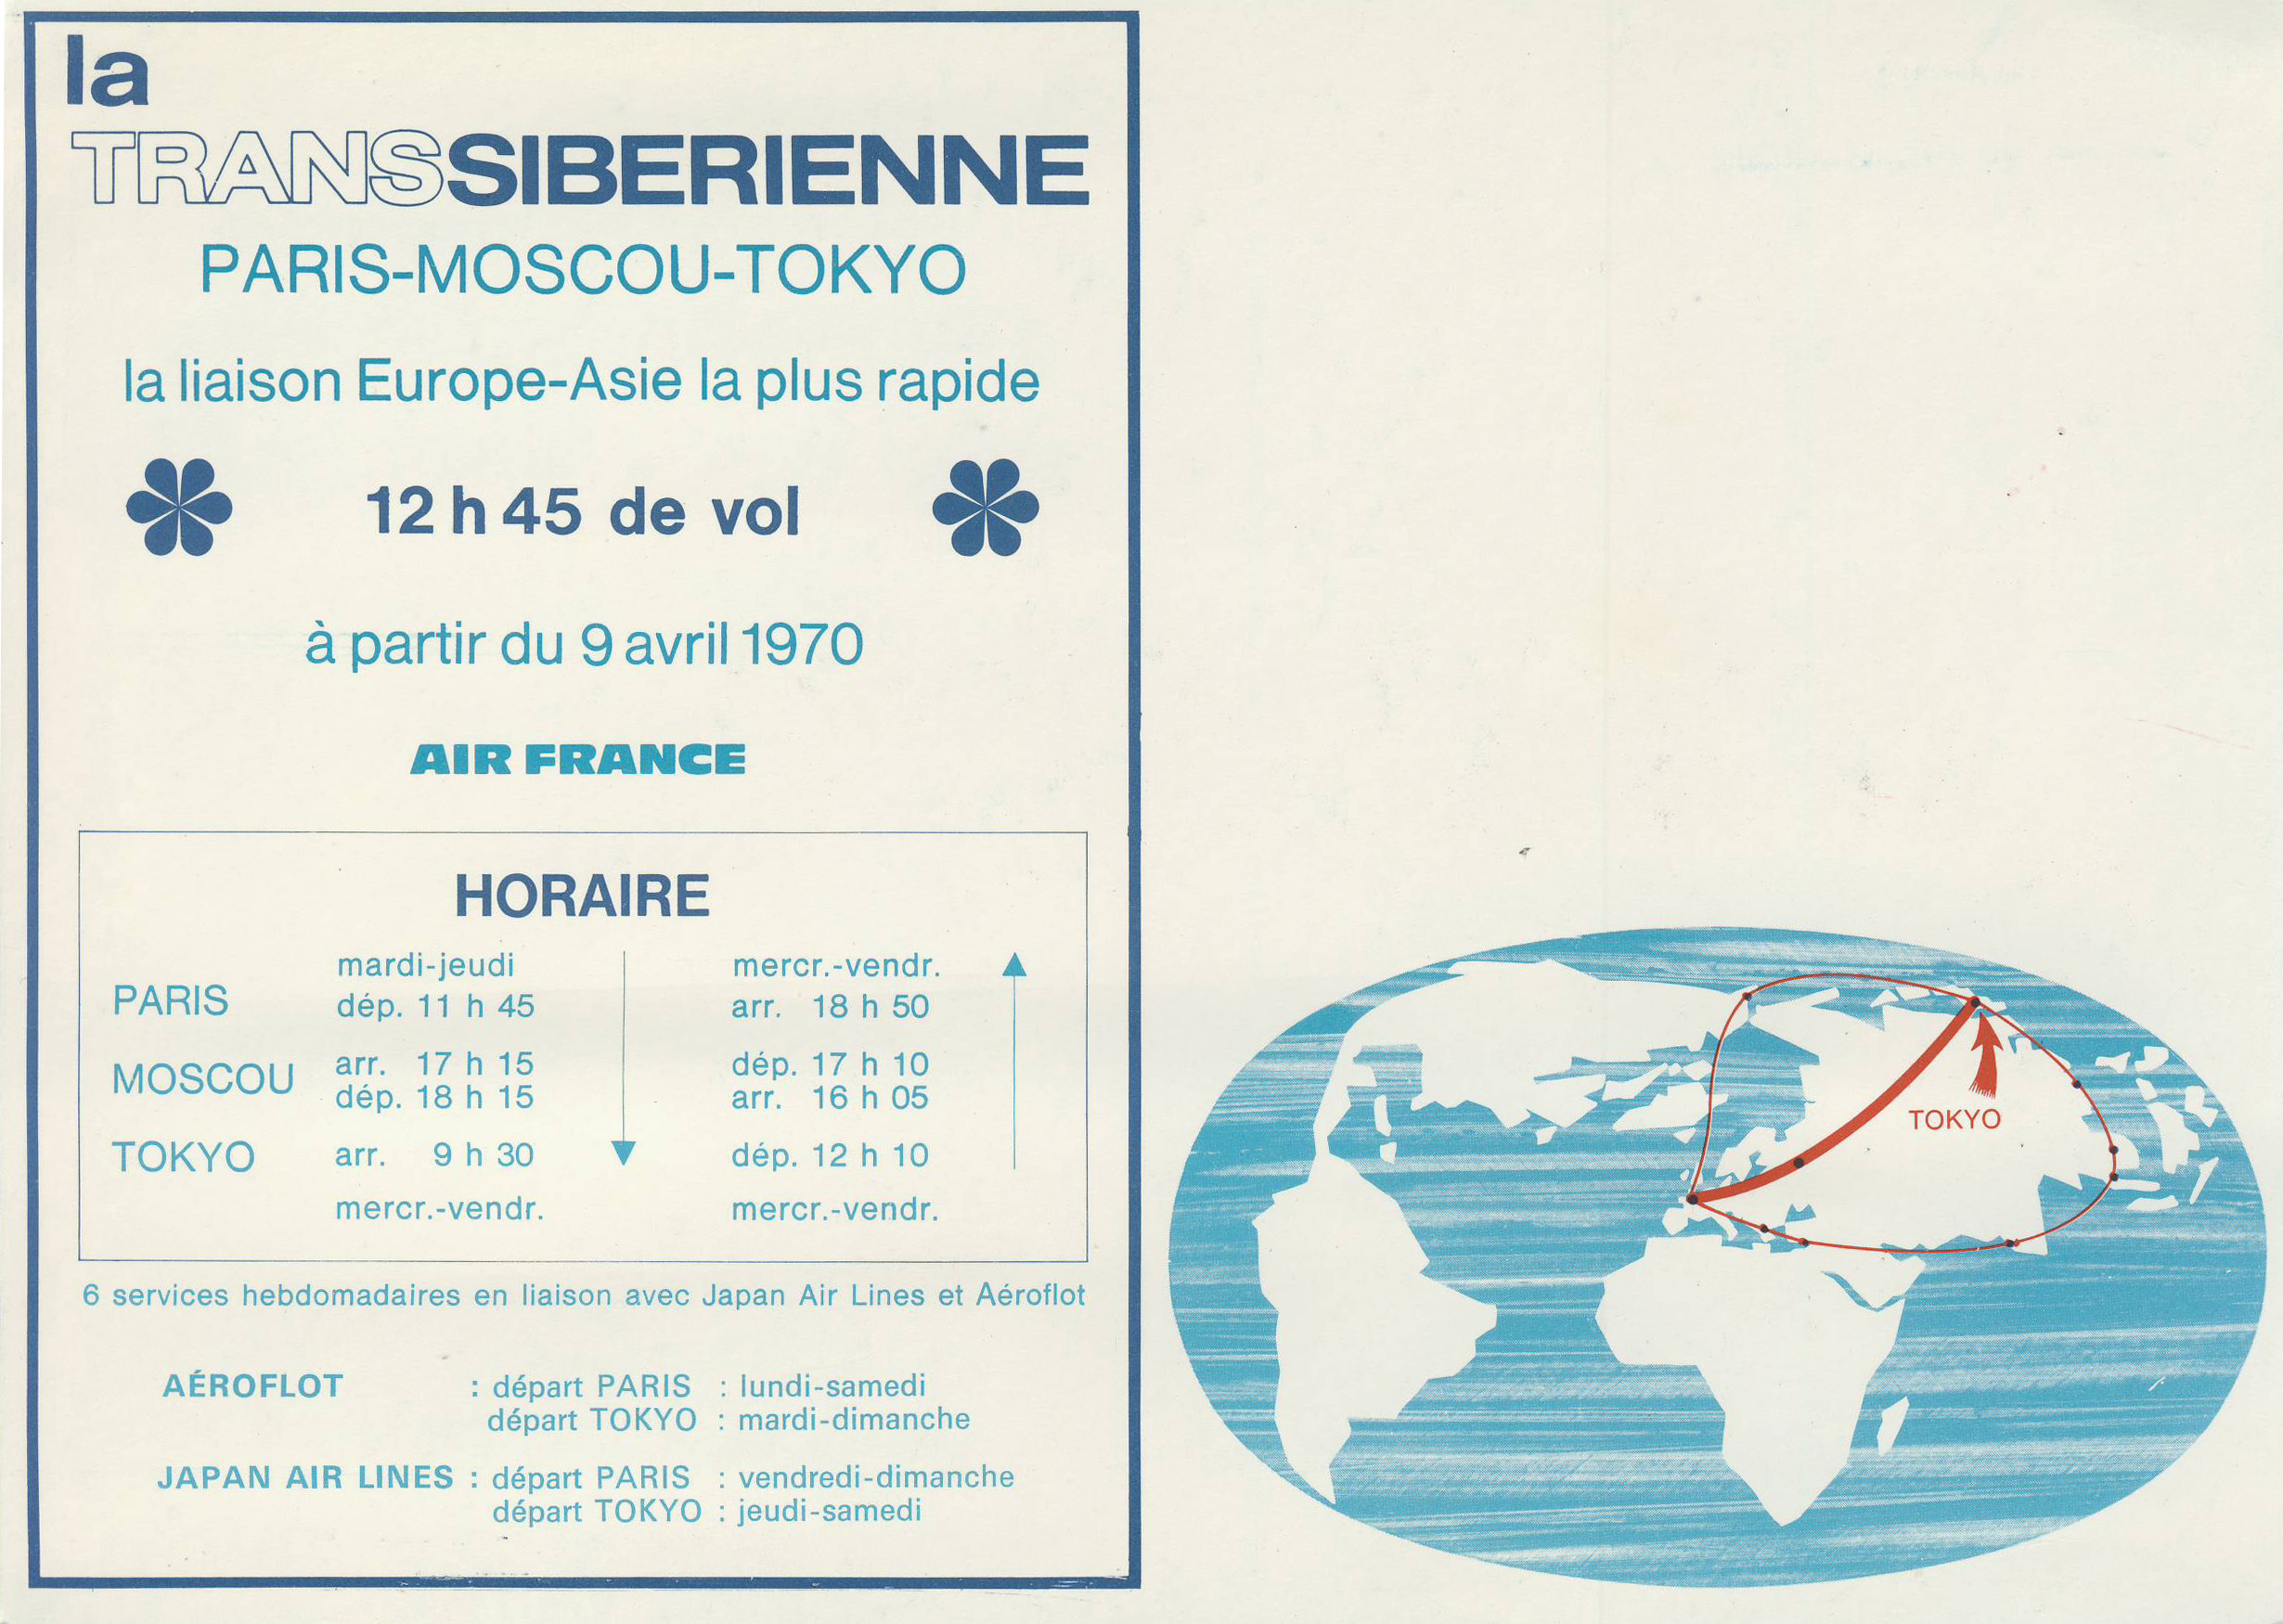 Промолистовка первого регулярного рейса ЭРФРАНС Париж-Москва-Токио 9 апреля 1970 г.